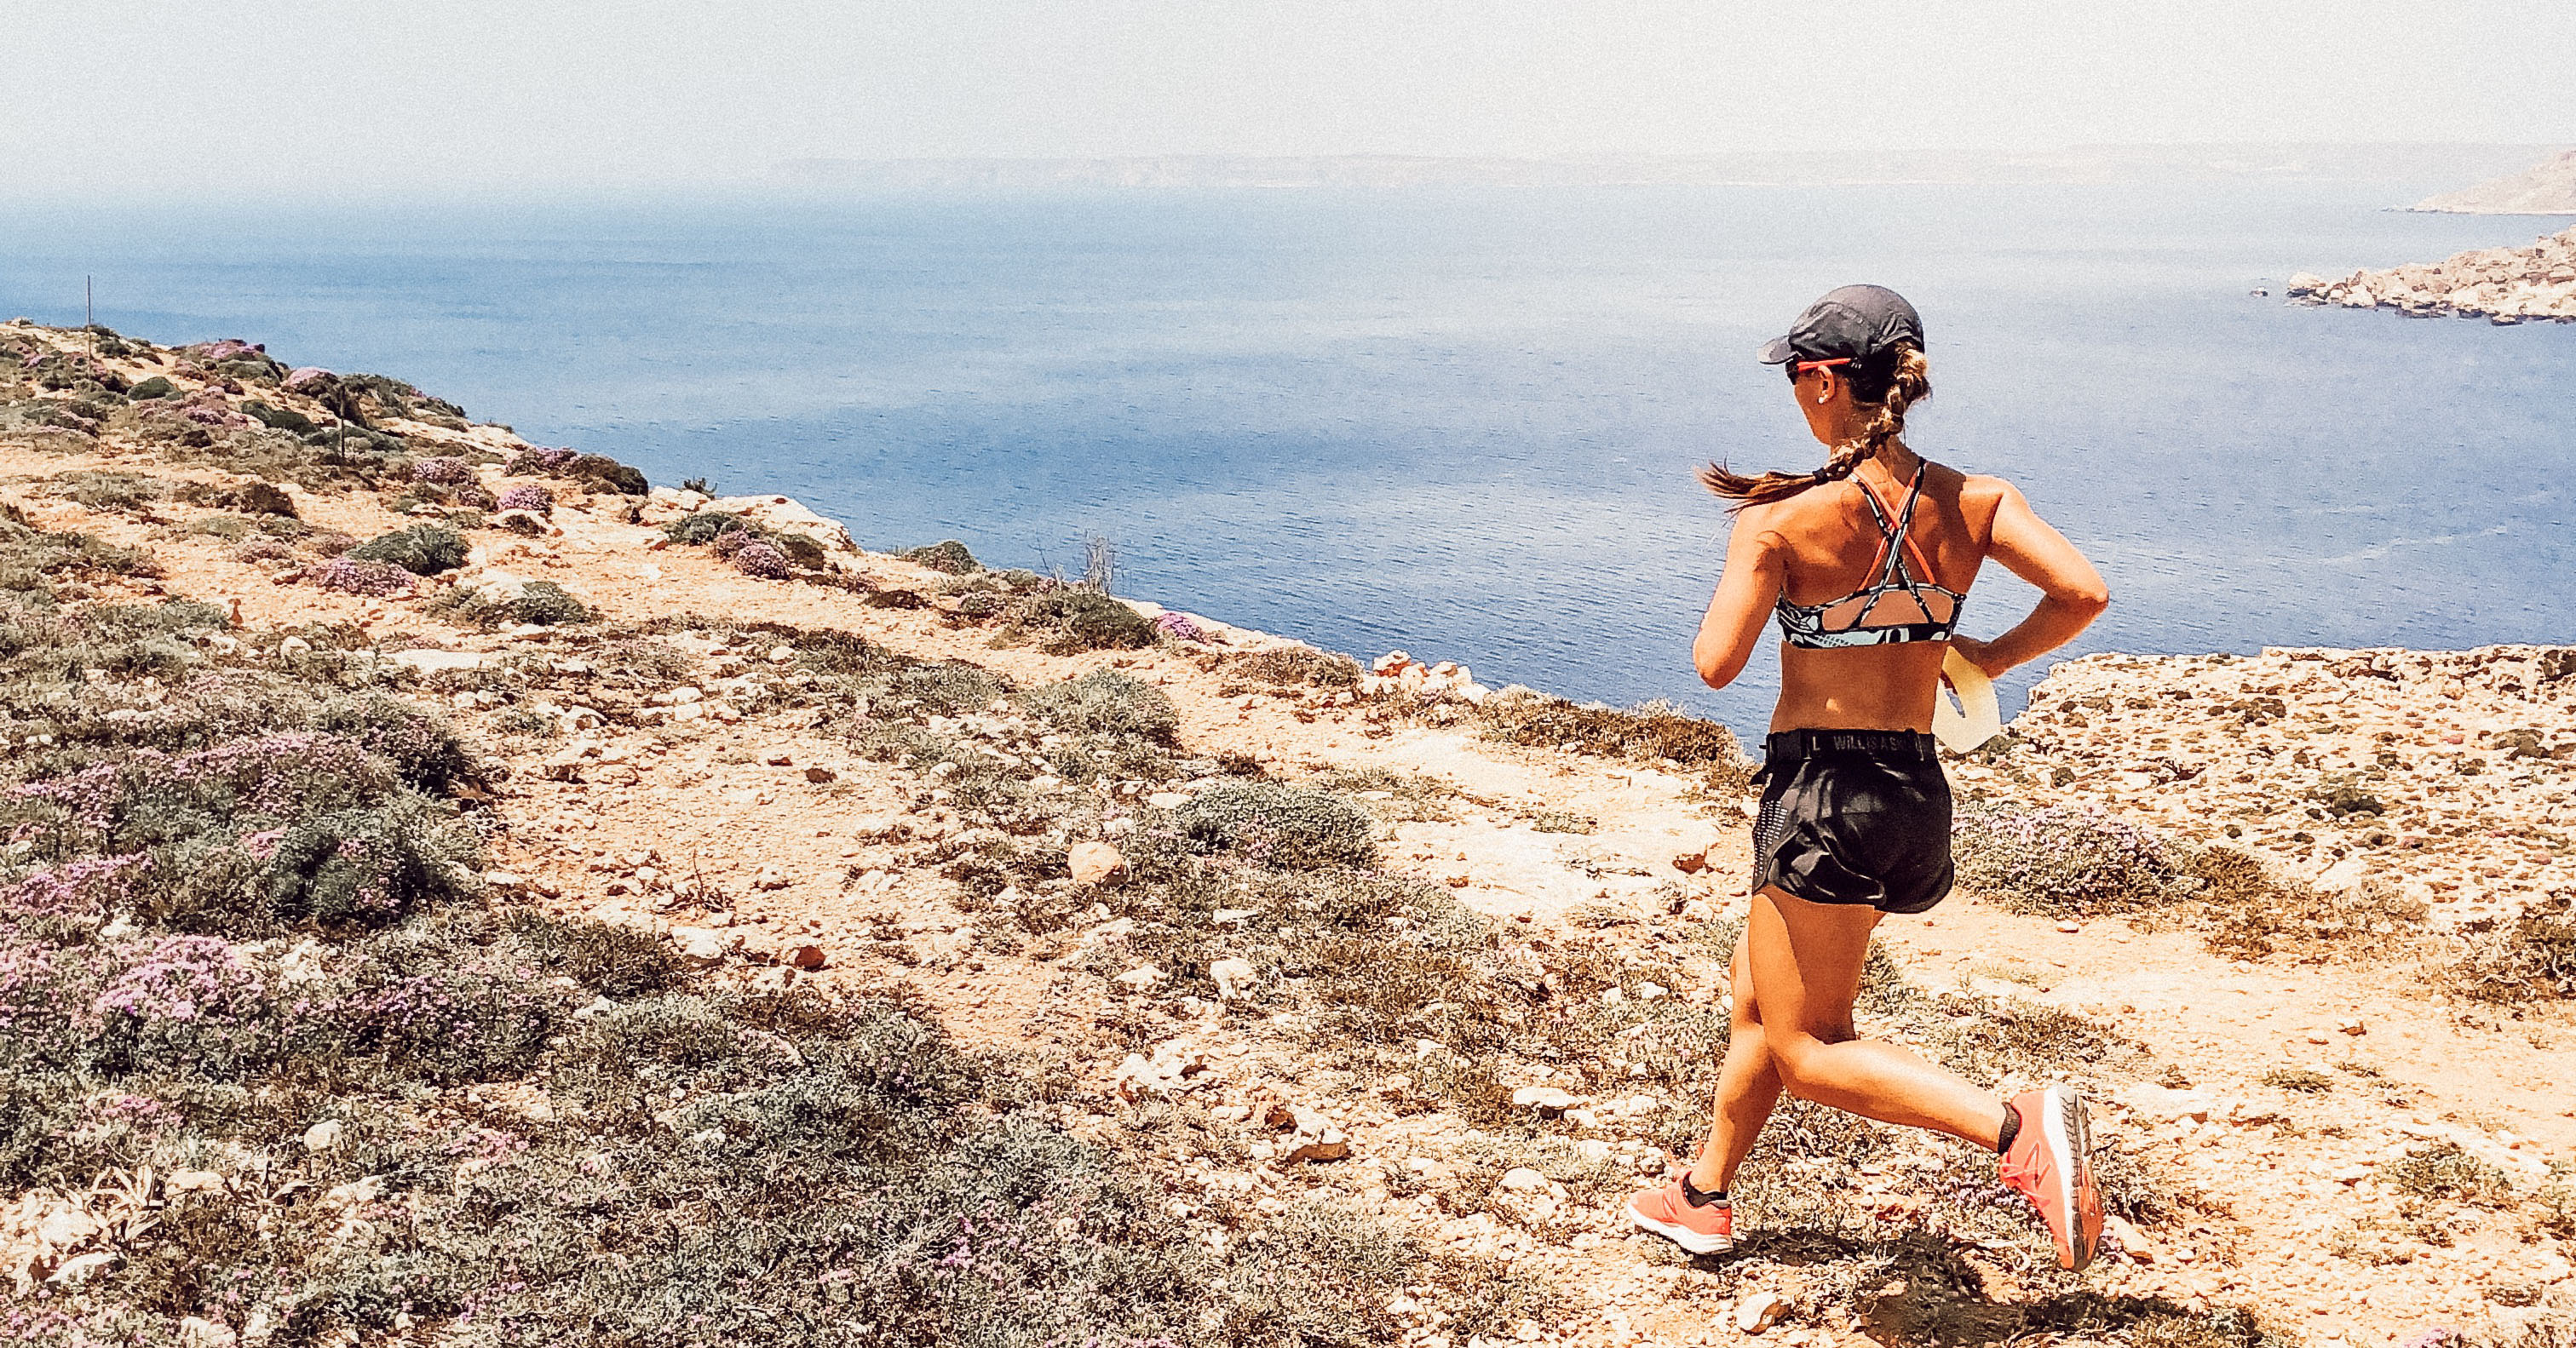 Rularea în Malta - Descoperiți Malta Athlete Angele Satarano 6 Drumuri preferate de alergare pe insulă's 6 favourite running routes on the island